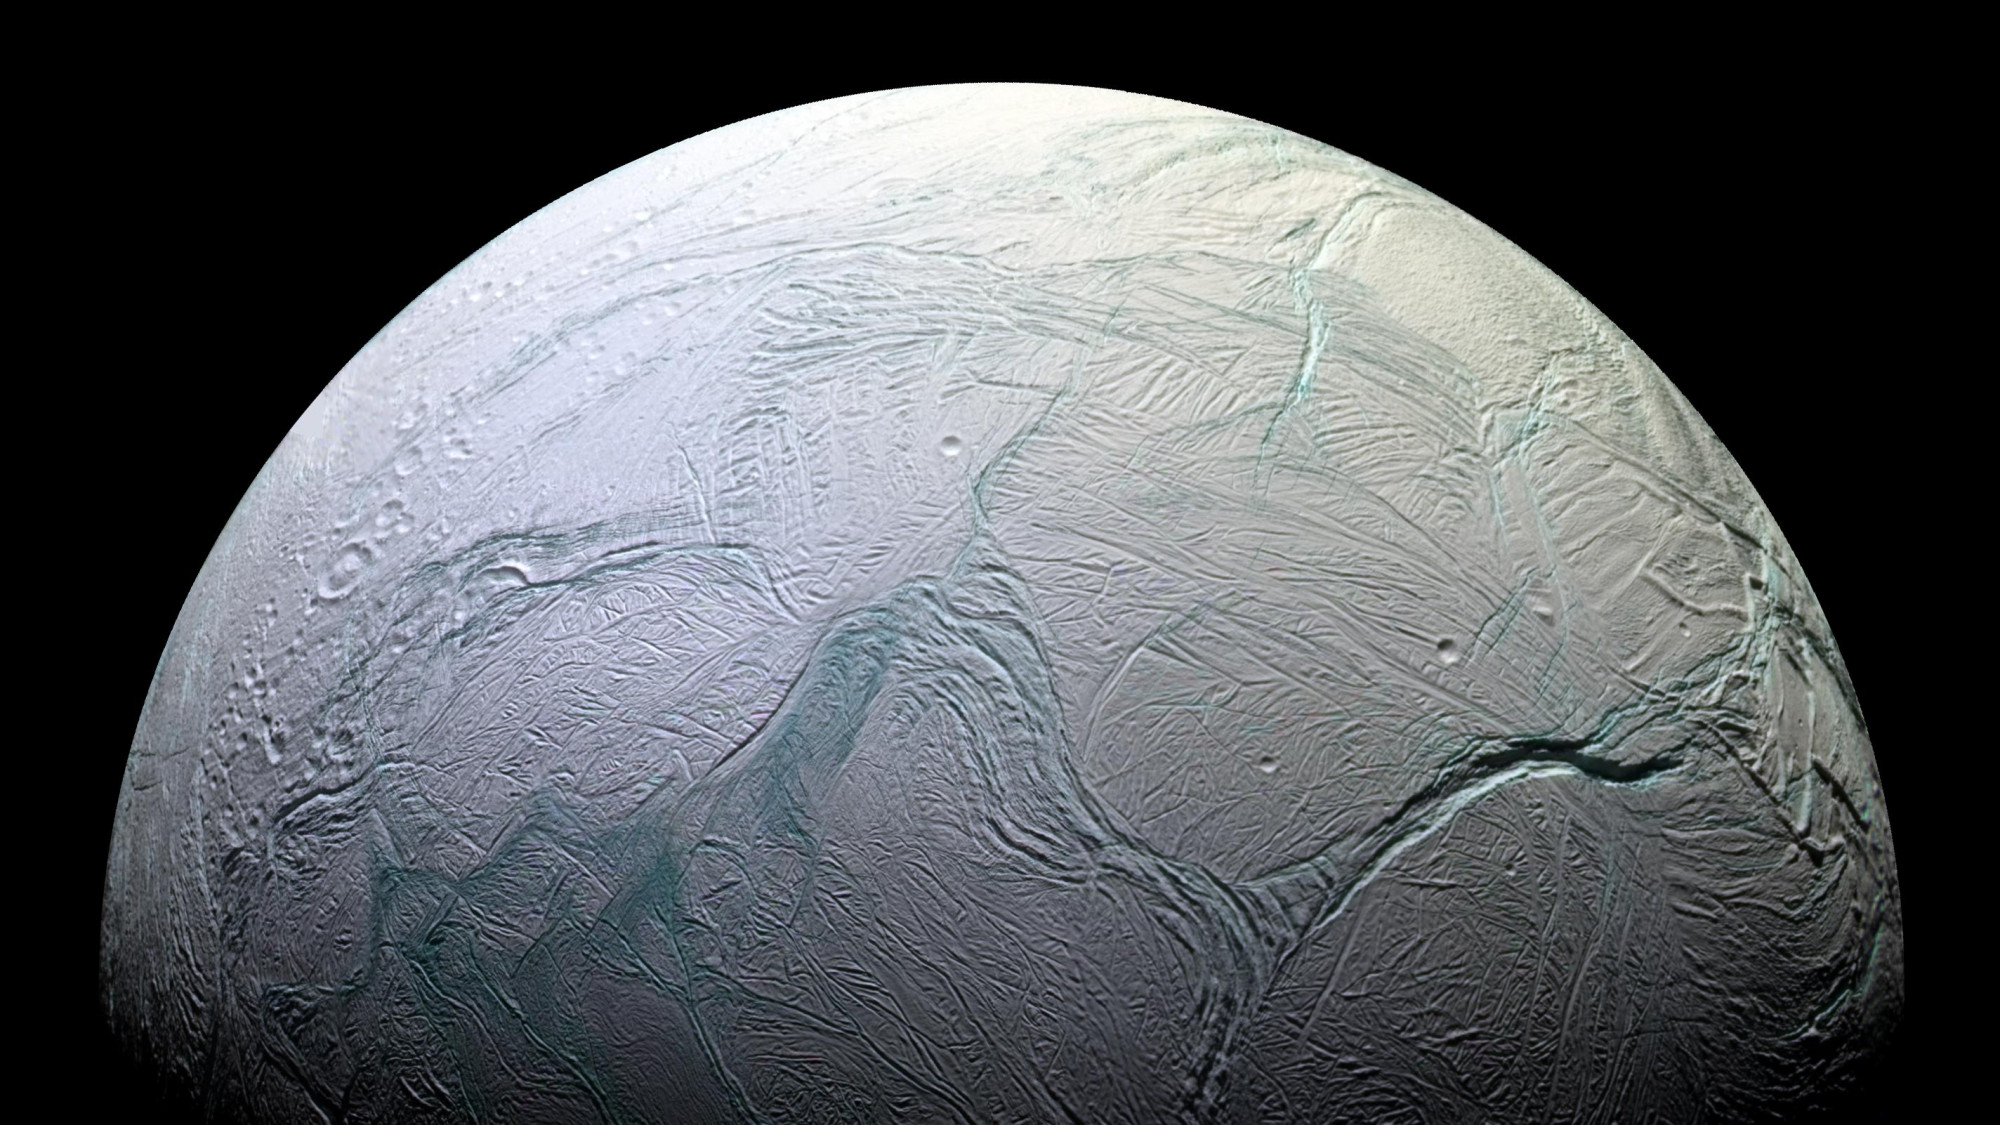 A Szaturnusz Enceladus holdja a Cassini űrszonda felvételén